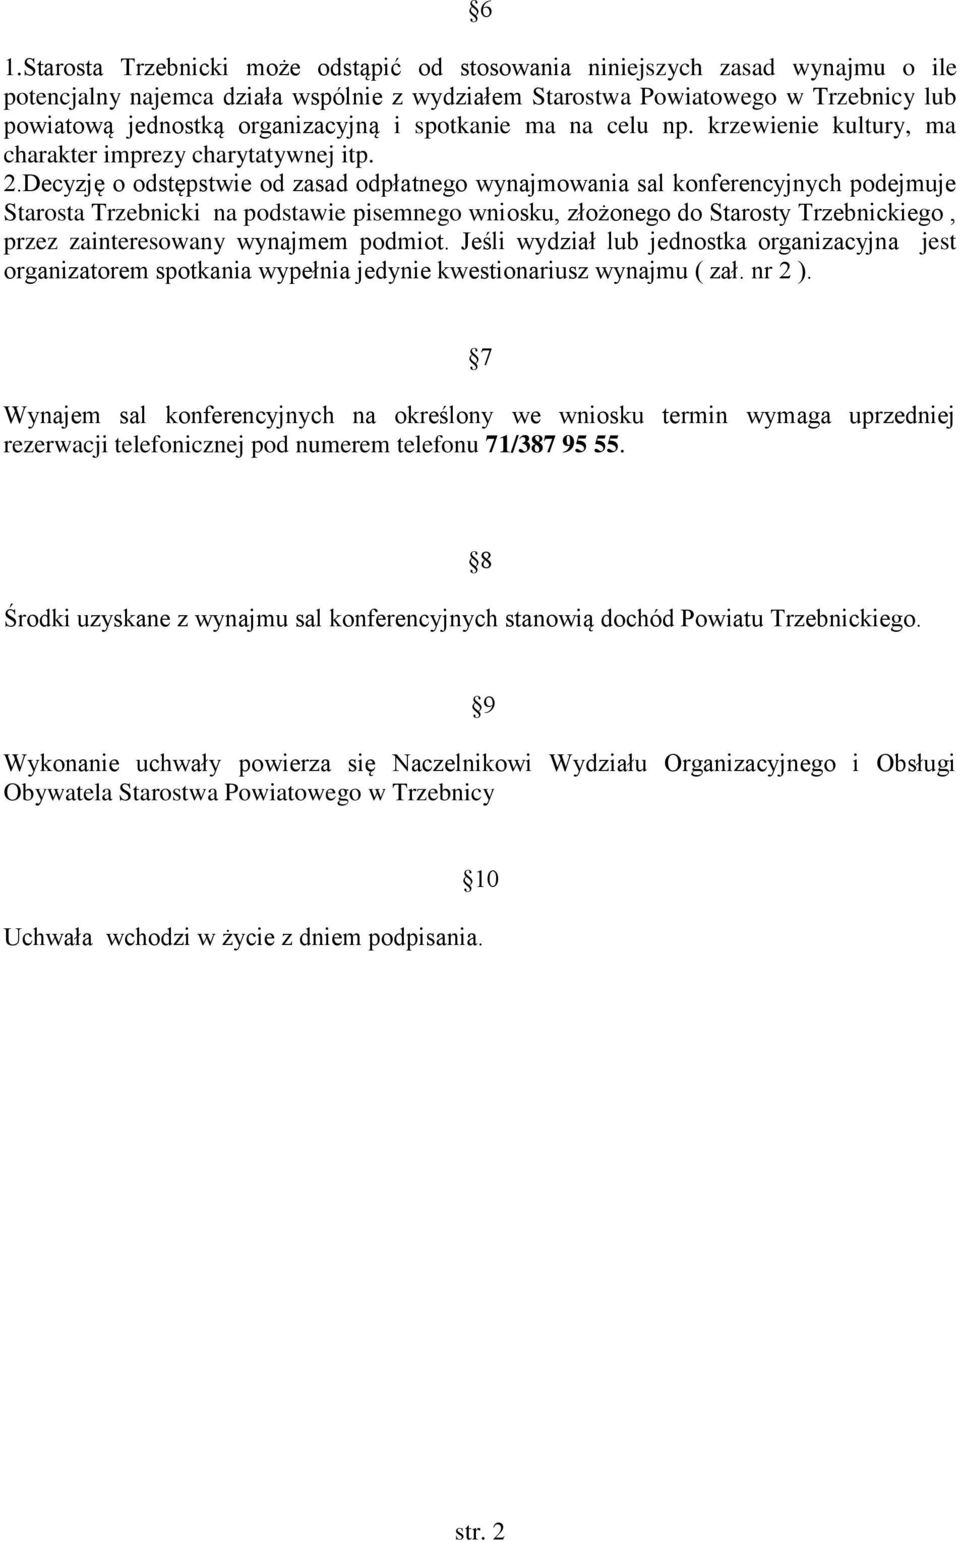 Decyzję o odstępstwie od zasad odpłatnego wynajmowania sal konferencyjnych podejmuje Starosta Trzebnicki na podstawie pisemnego wniosku, złożonego do Starosty Trzebnickiego, przez zainteresowany